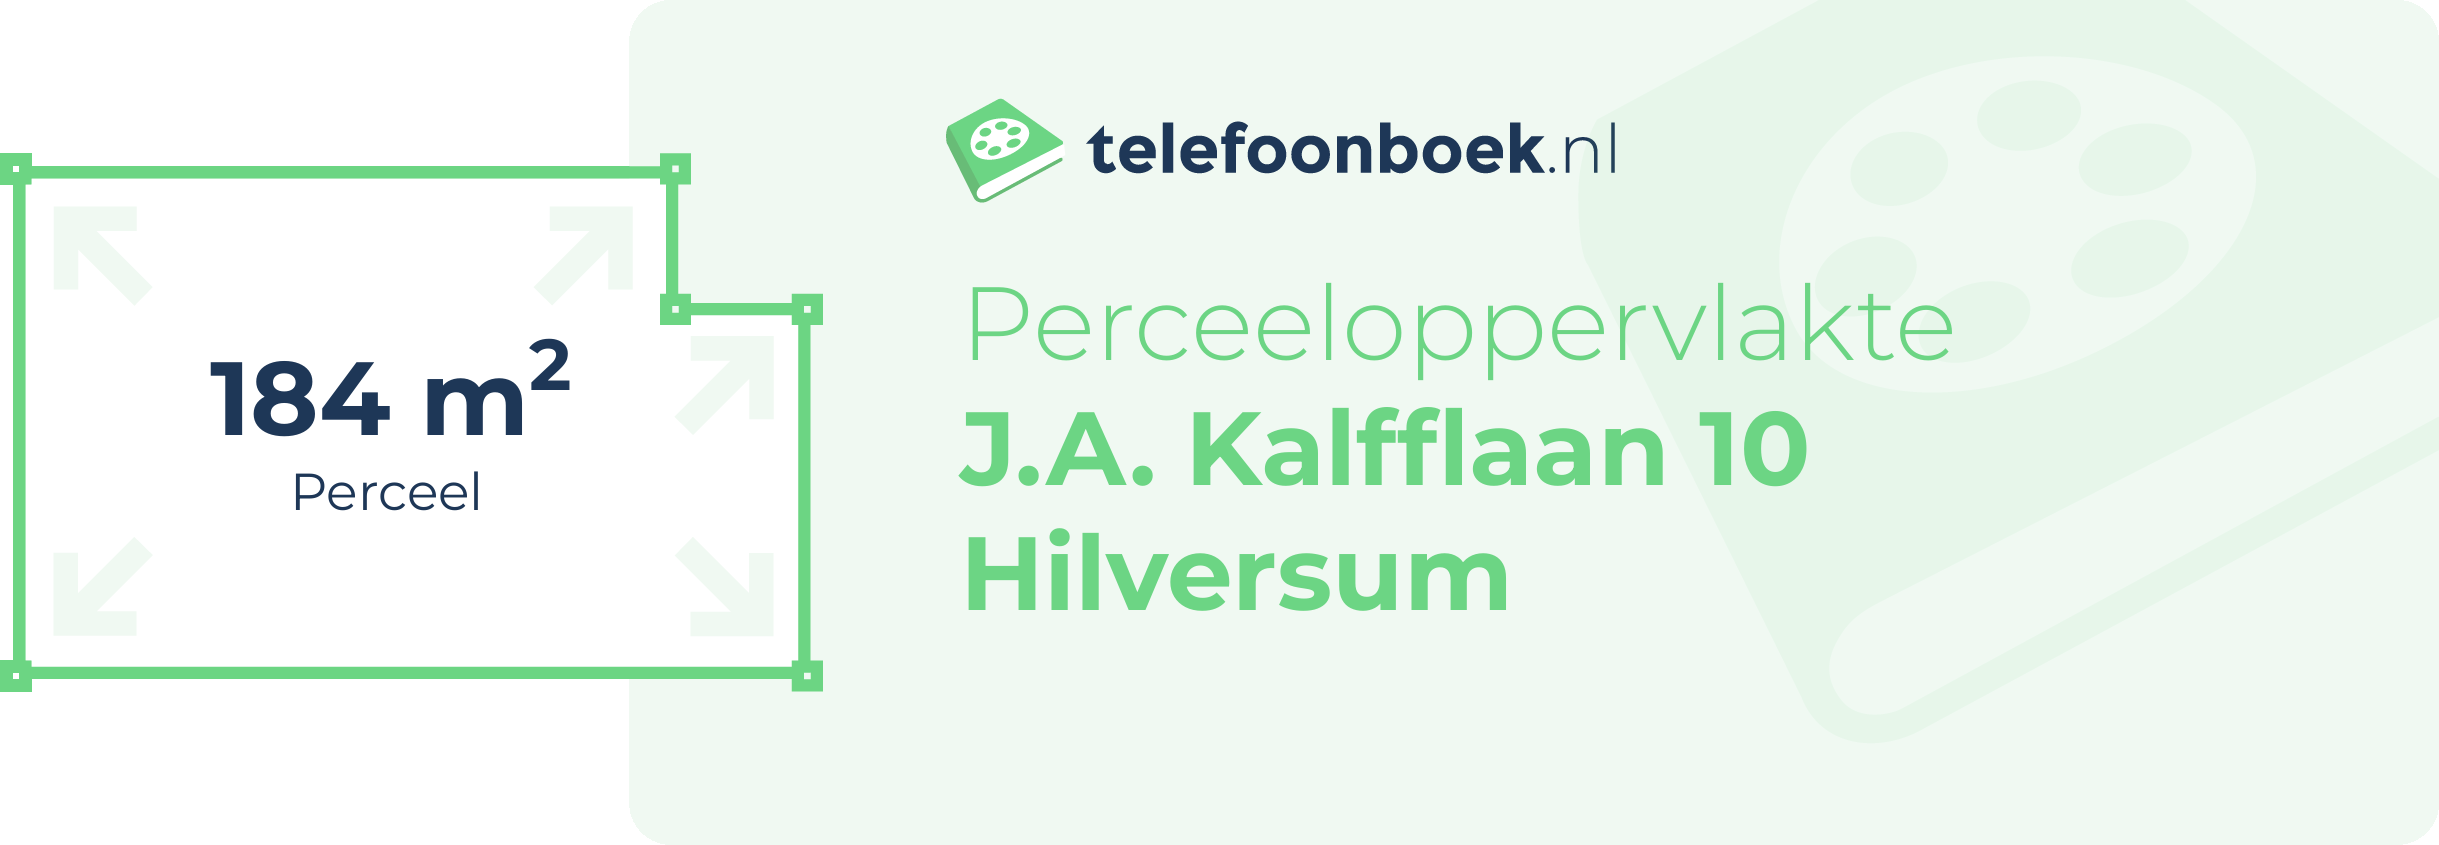 Perceeloppervlakte J.A. Kalfflaan 10 Hilversum